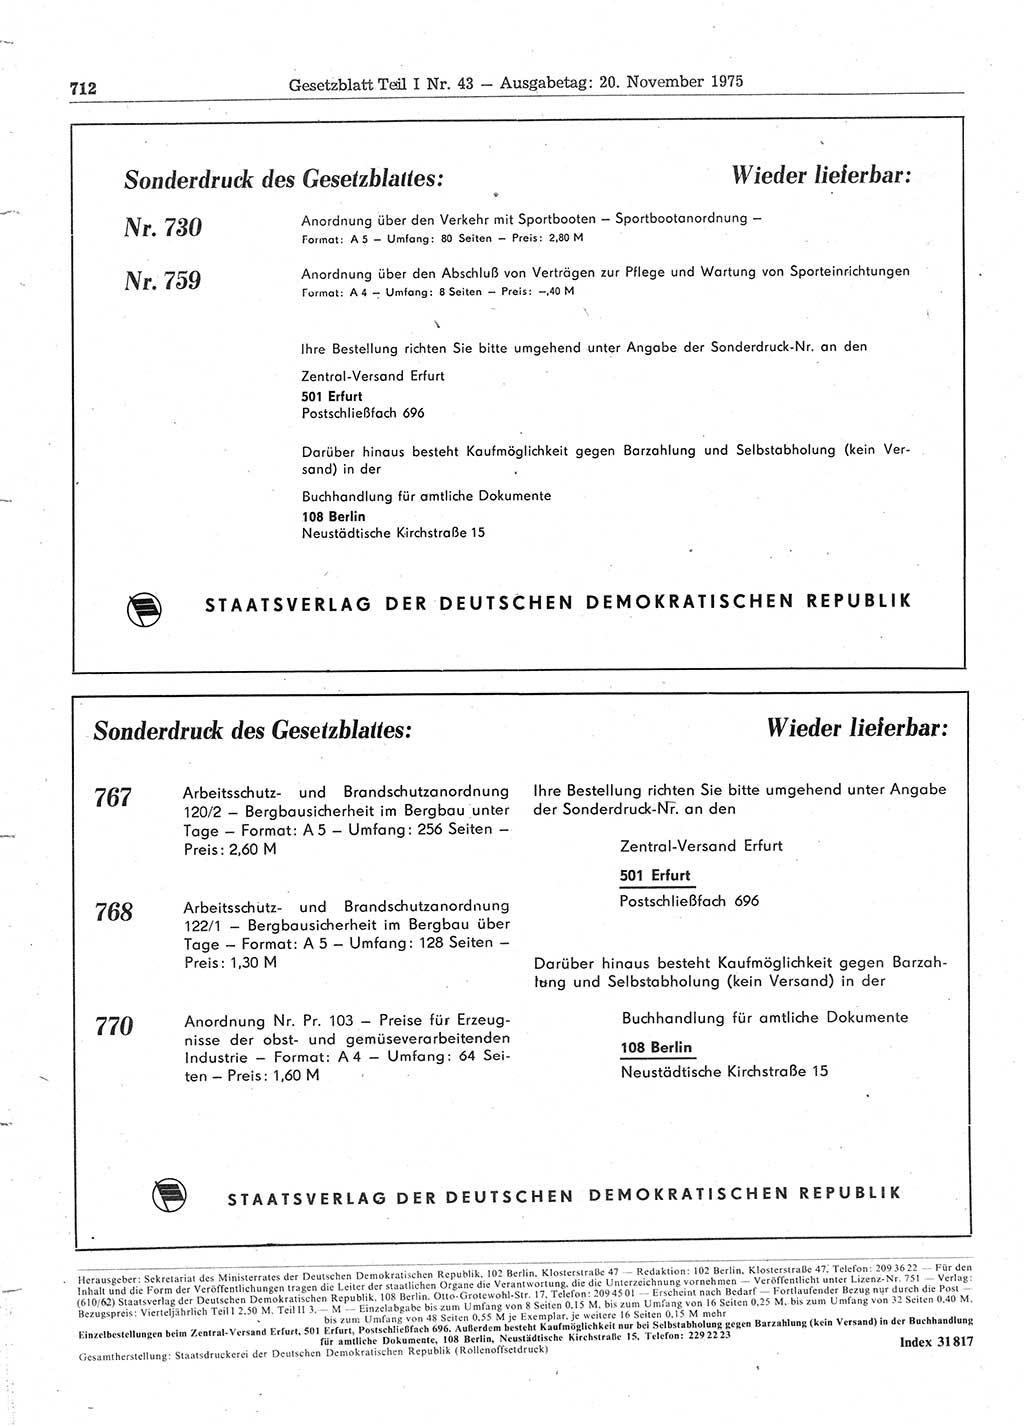 Gesetzblatt (GBl.) der Deutschen Demokratischen Republik (DDR) Teil Ⅰ 1975, Seite 712 (GBl. DDR Ⅰ 1975, S. 712)